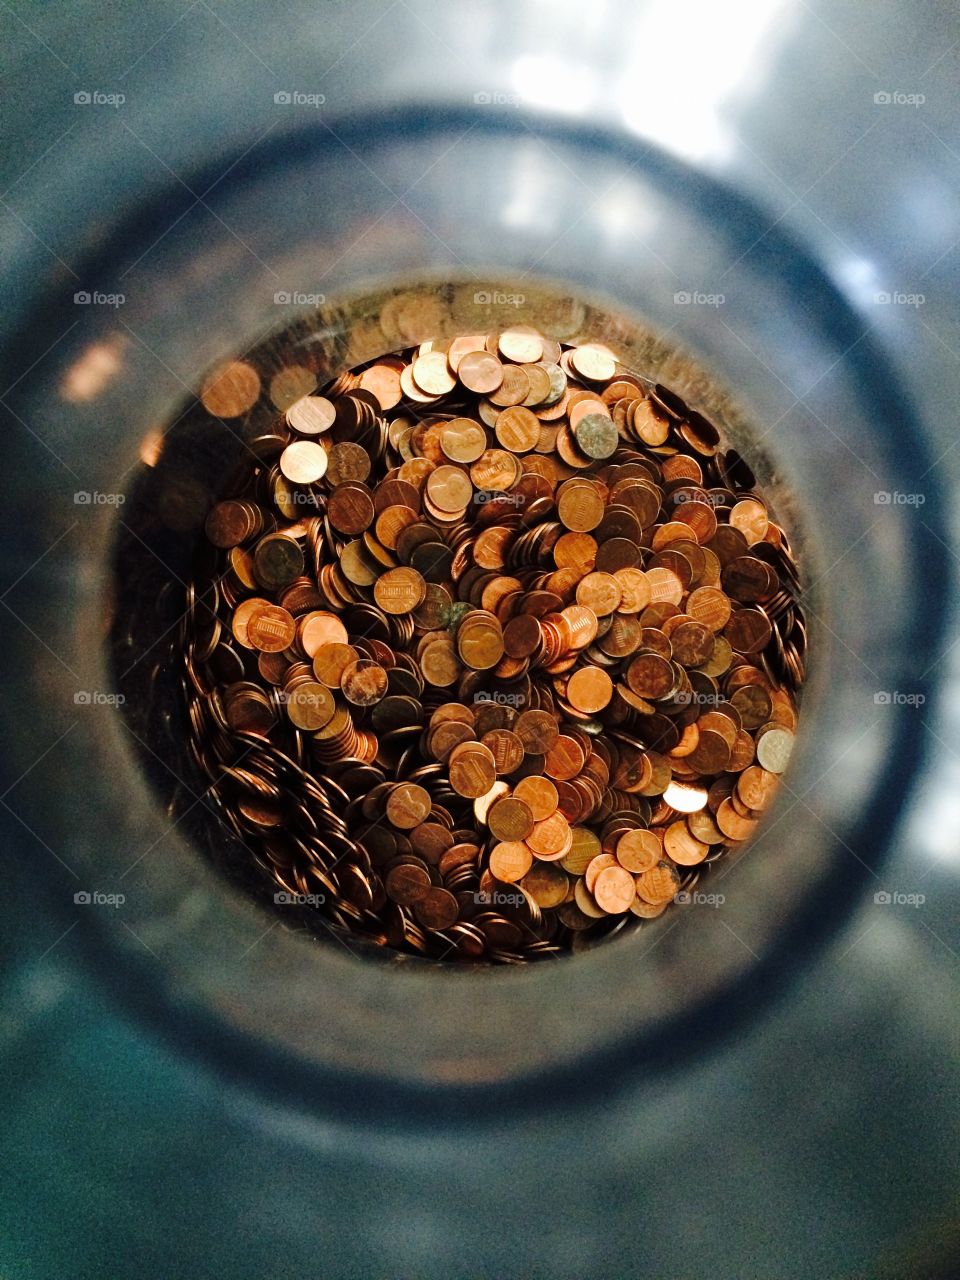 Pennies in a jar 